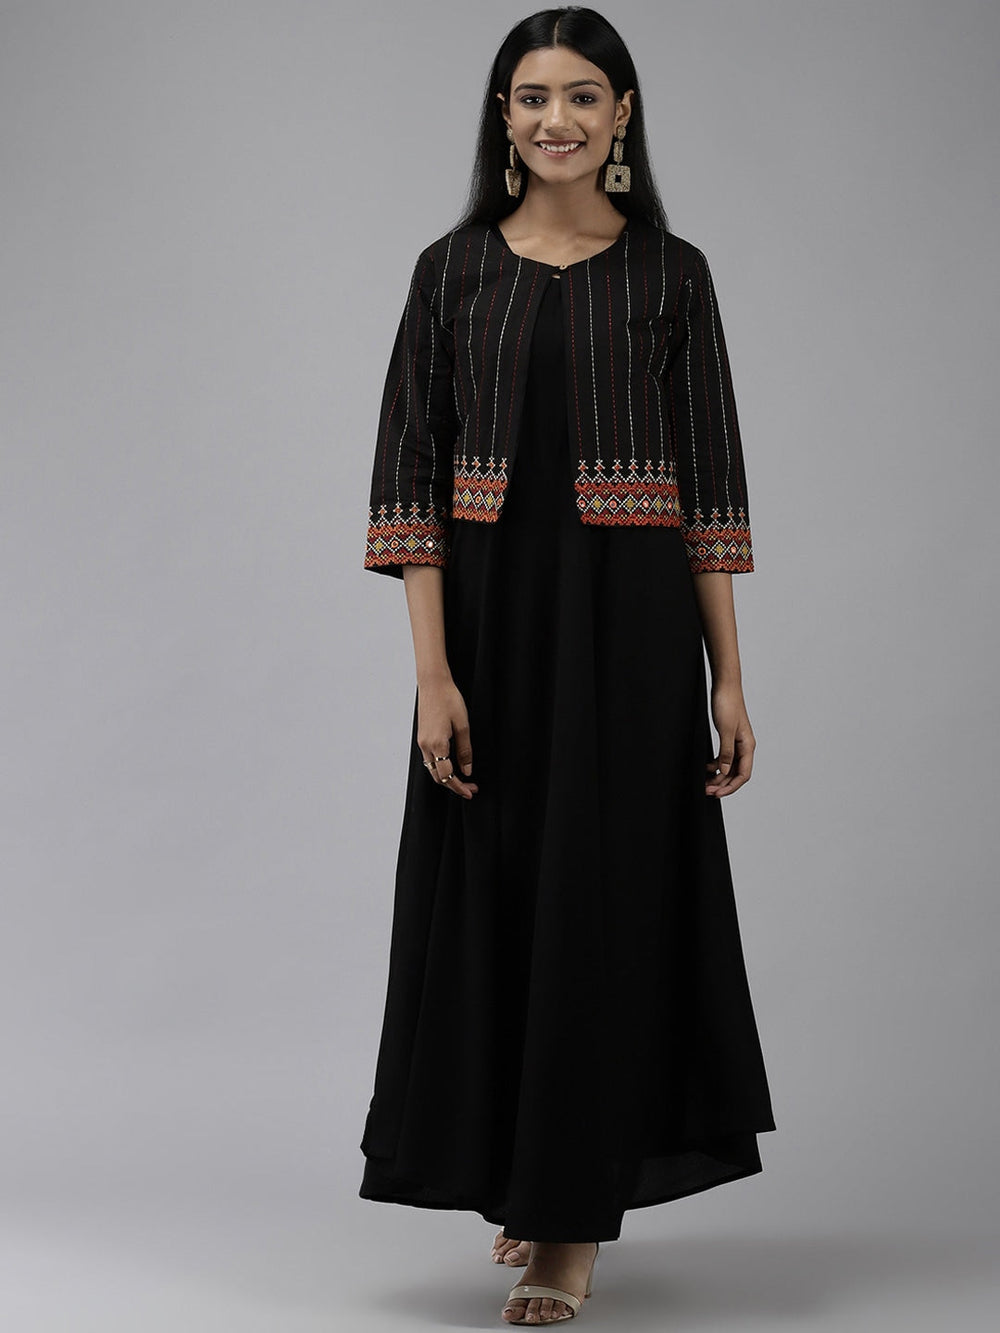 Black Ethnic Dress with Jacket